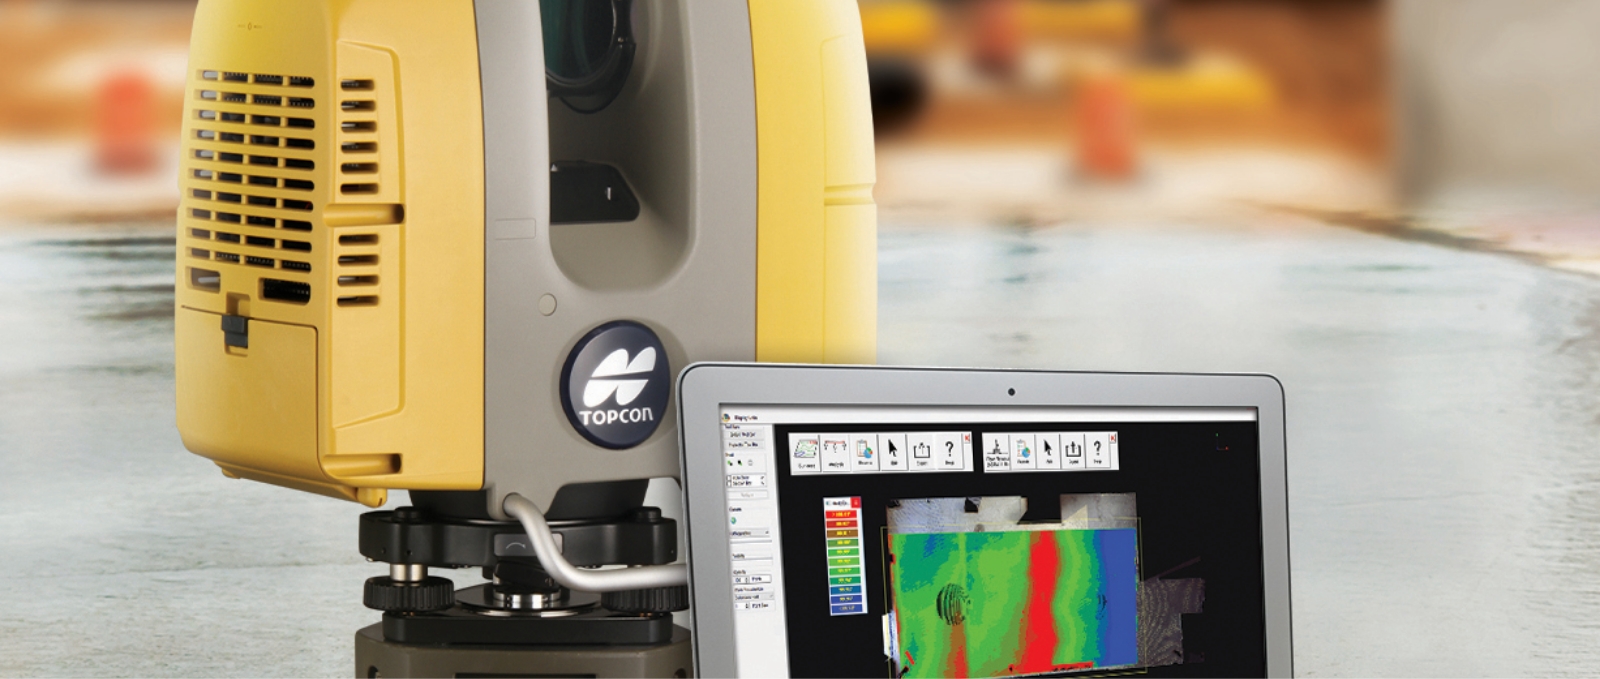 Topcon GLS 3D laser scanner